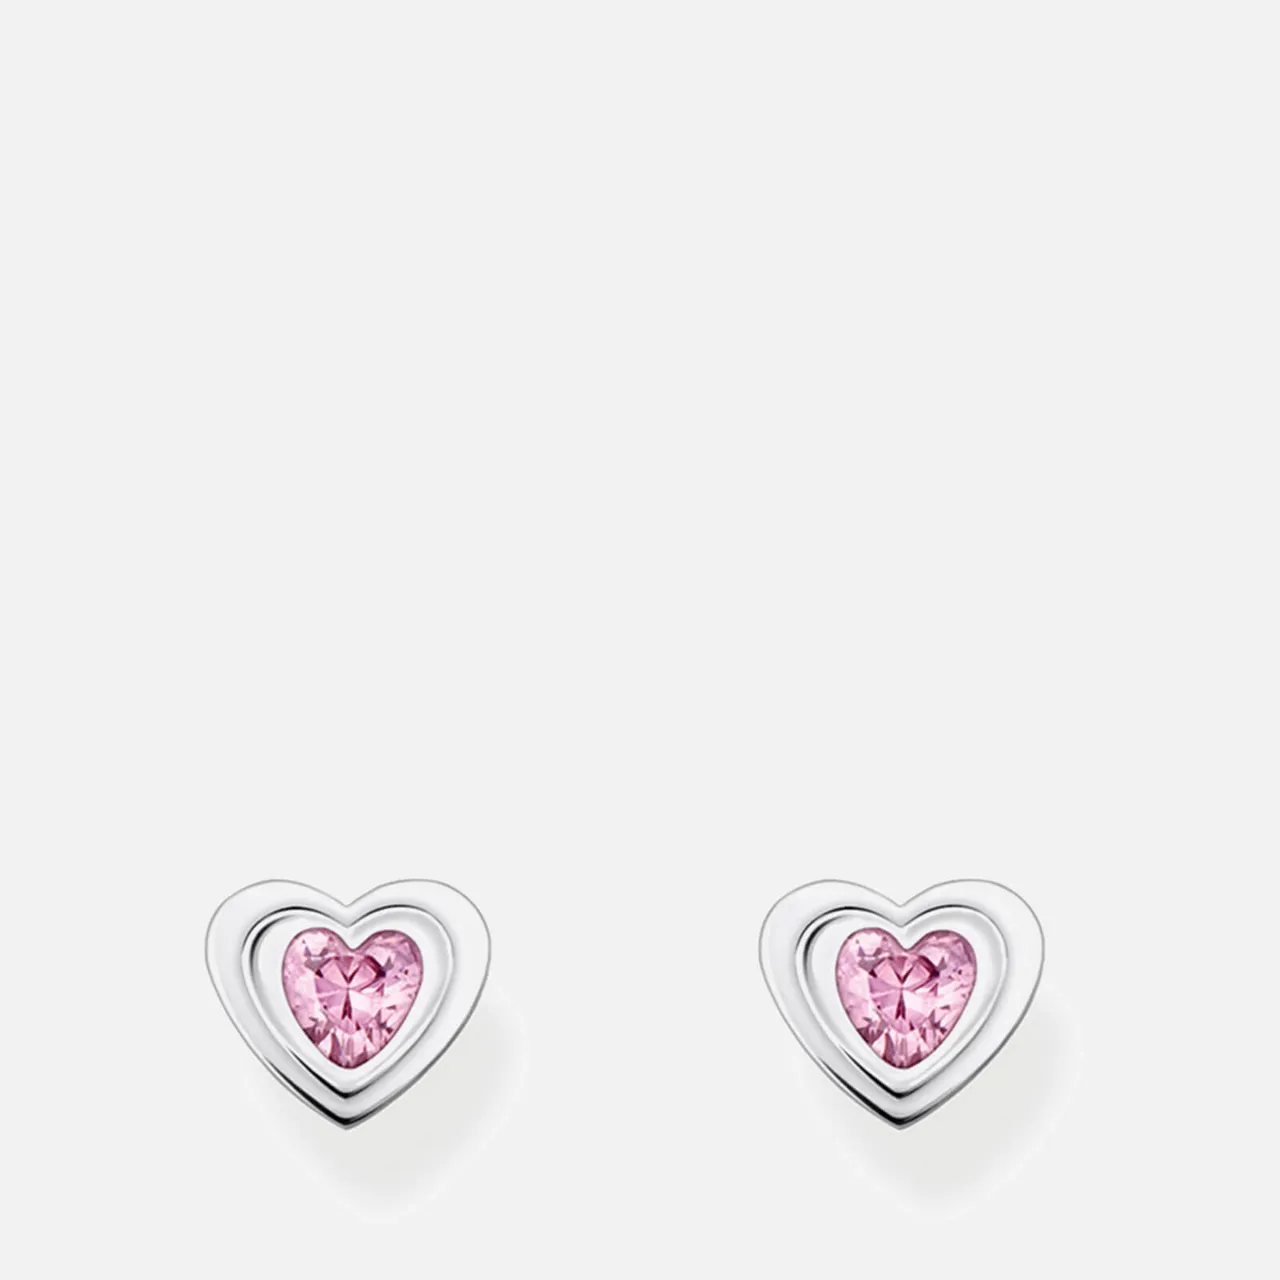 Thomas Sabo Silver Heart Stud Earrings